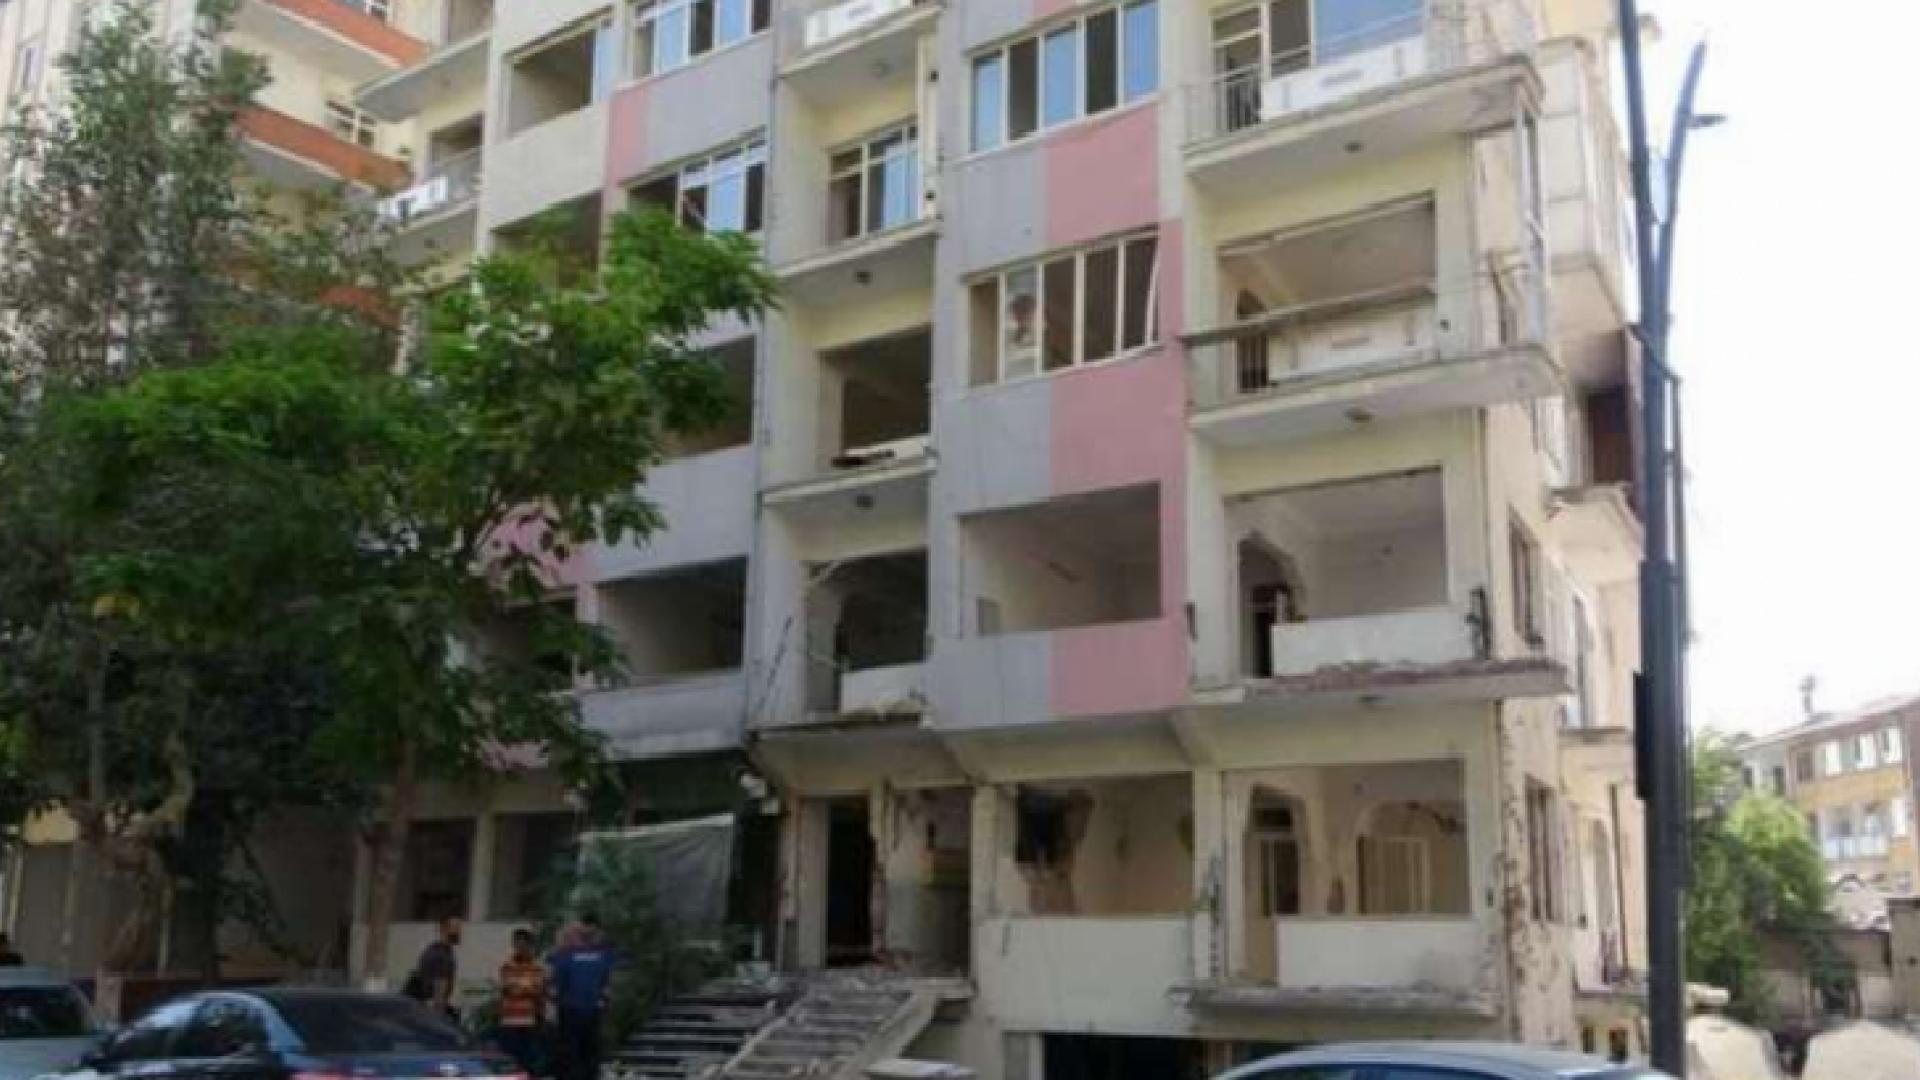 Malatya'da iş cinayeti: Asansörü sökmeye çalışan Ahmet Abinikli 4. kattan düşererk yaşamını kaybetti 2